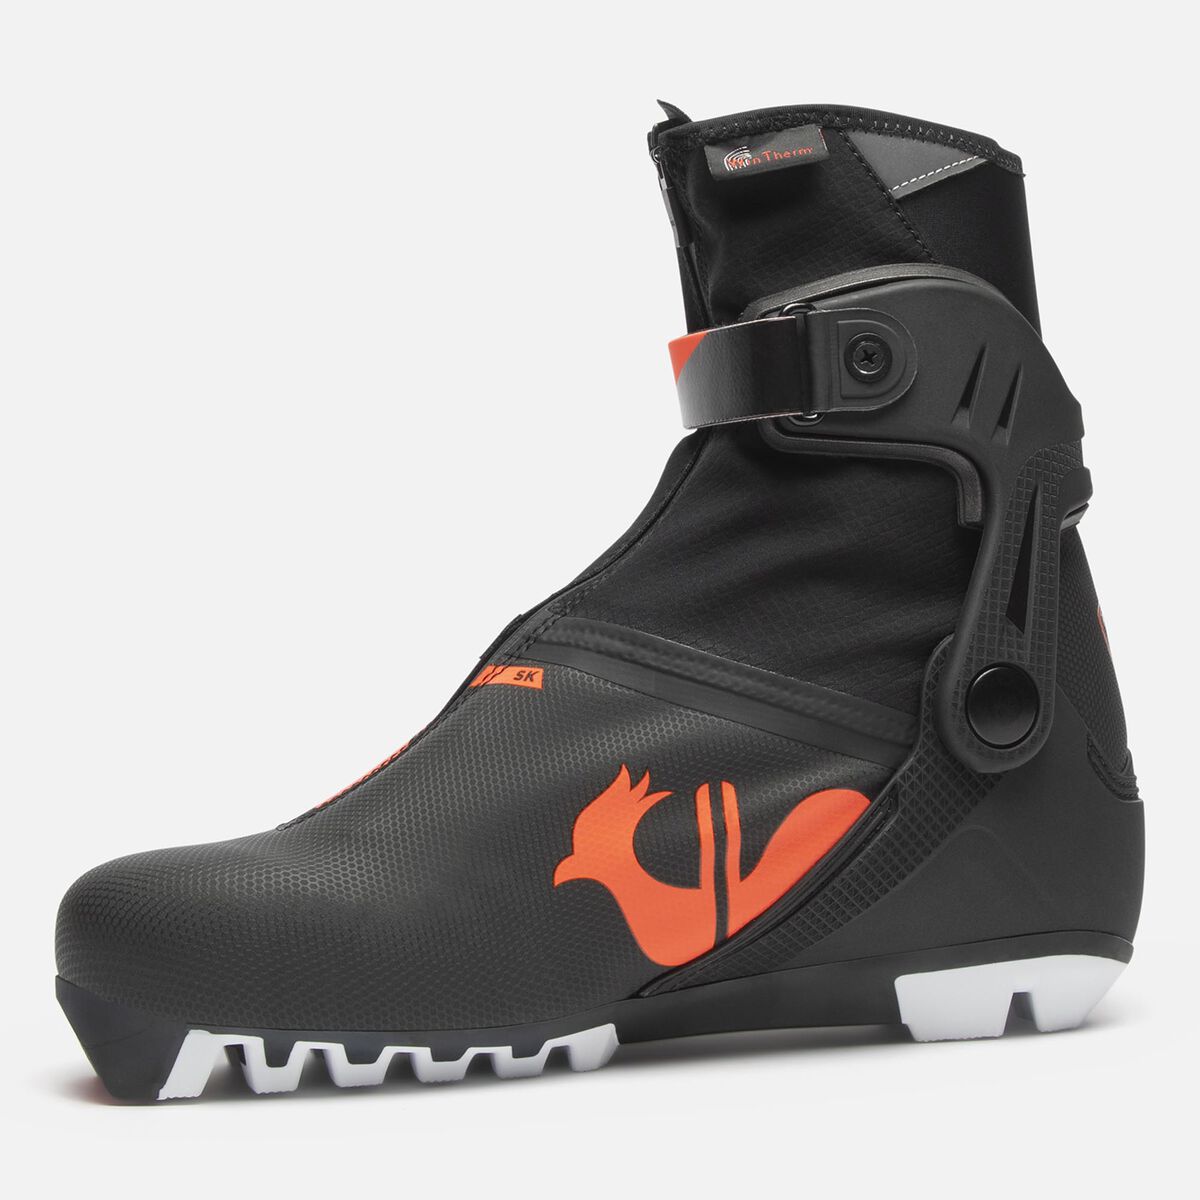 Chaussures de ski nordique Racing Unisexe X-10 Skate